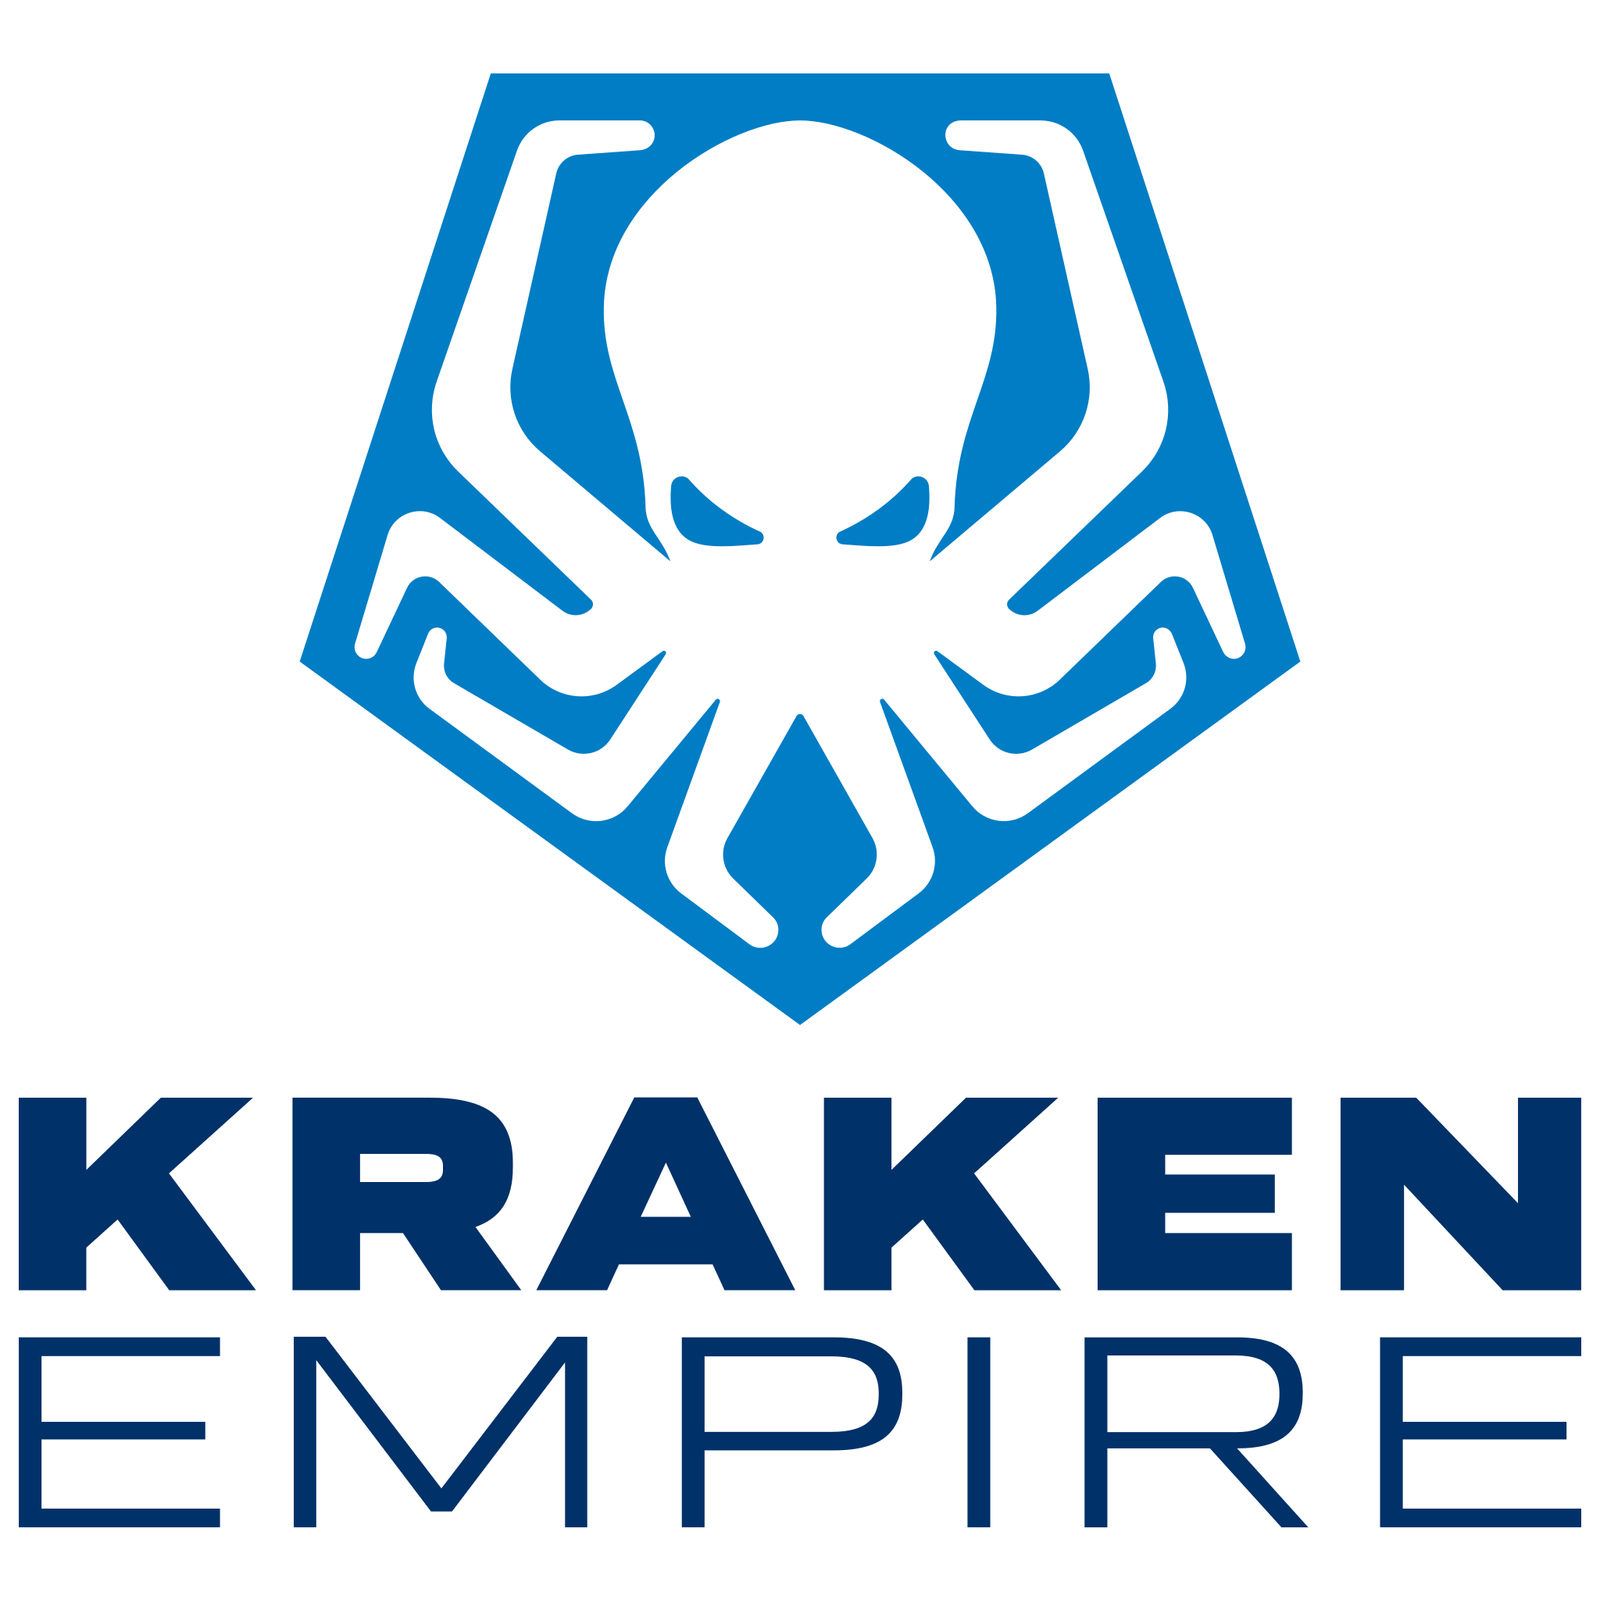 Kraken Empire  Games from Spain